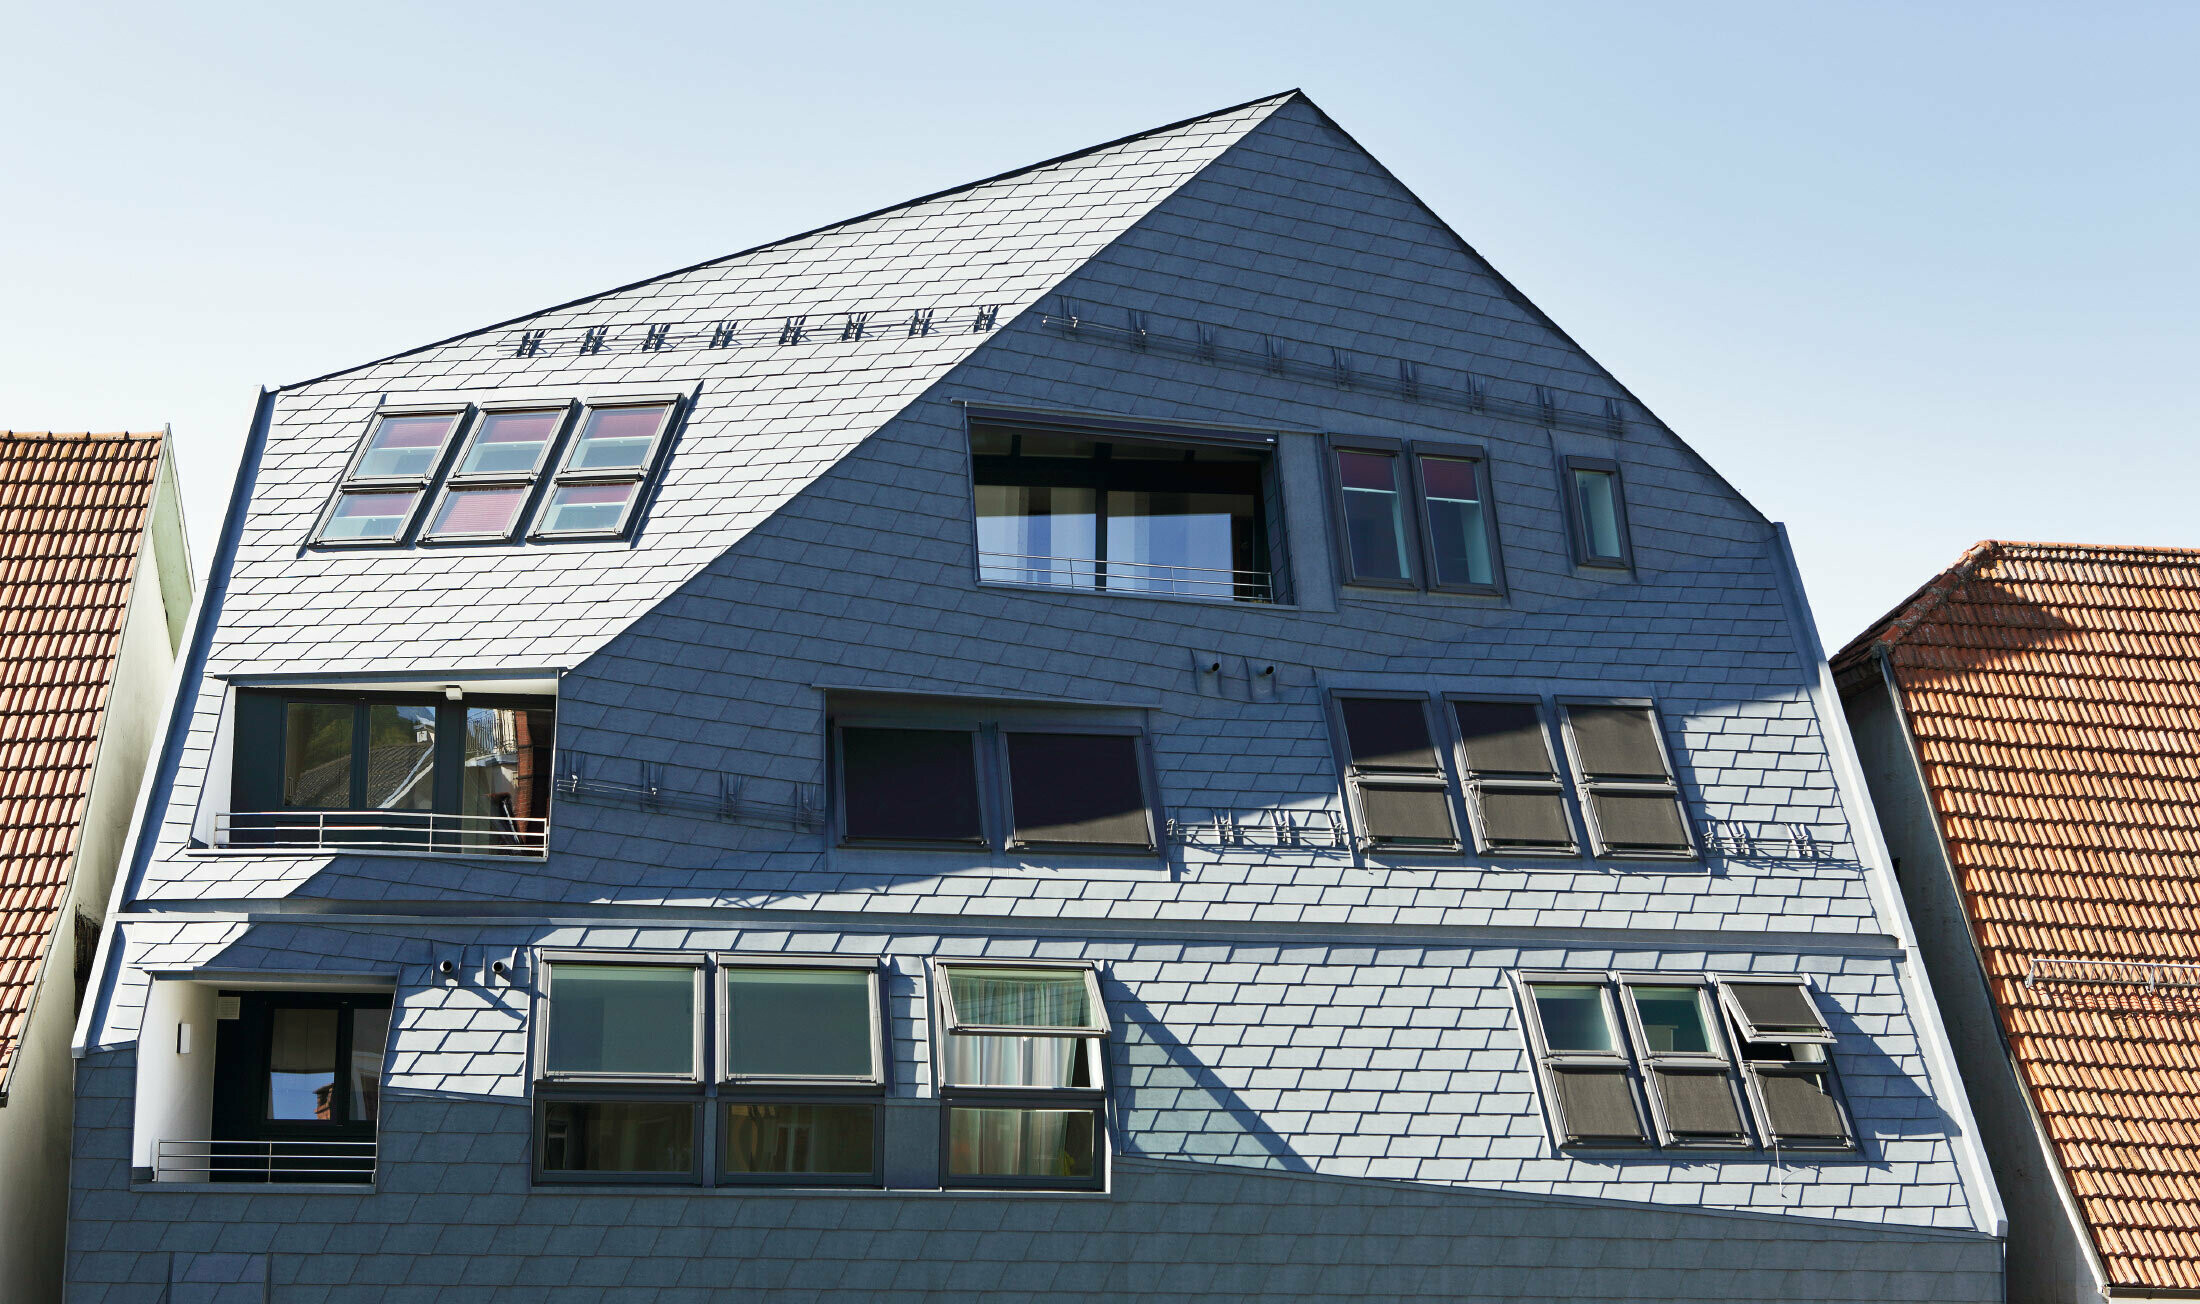 Galeriehaus mit gekanteter Fassadenfläche, verkleidet mit der PREFA Dach- und Wandschindel in P.10 Steingrau mit vielen Fenstern